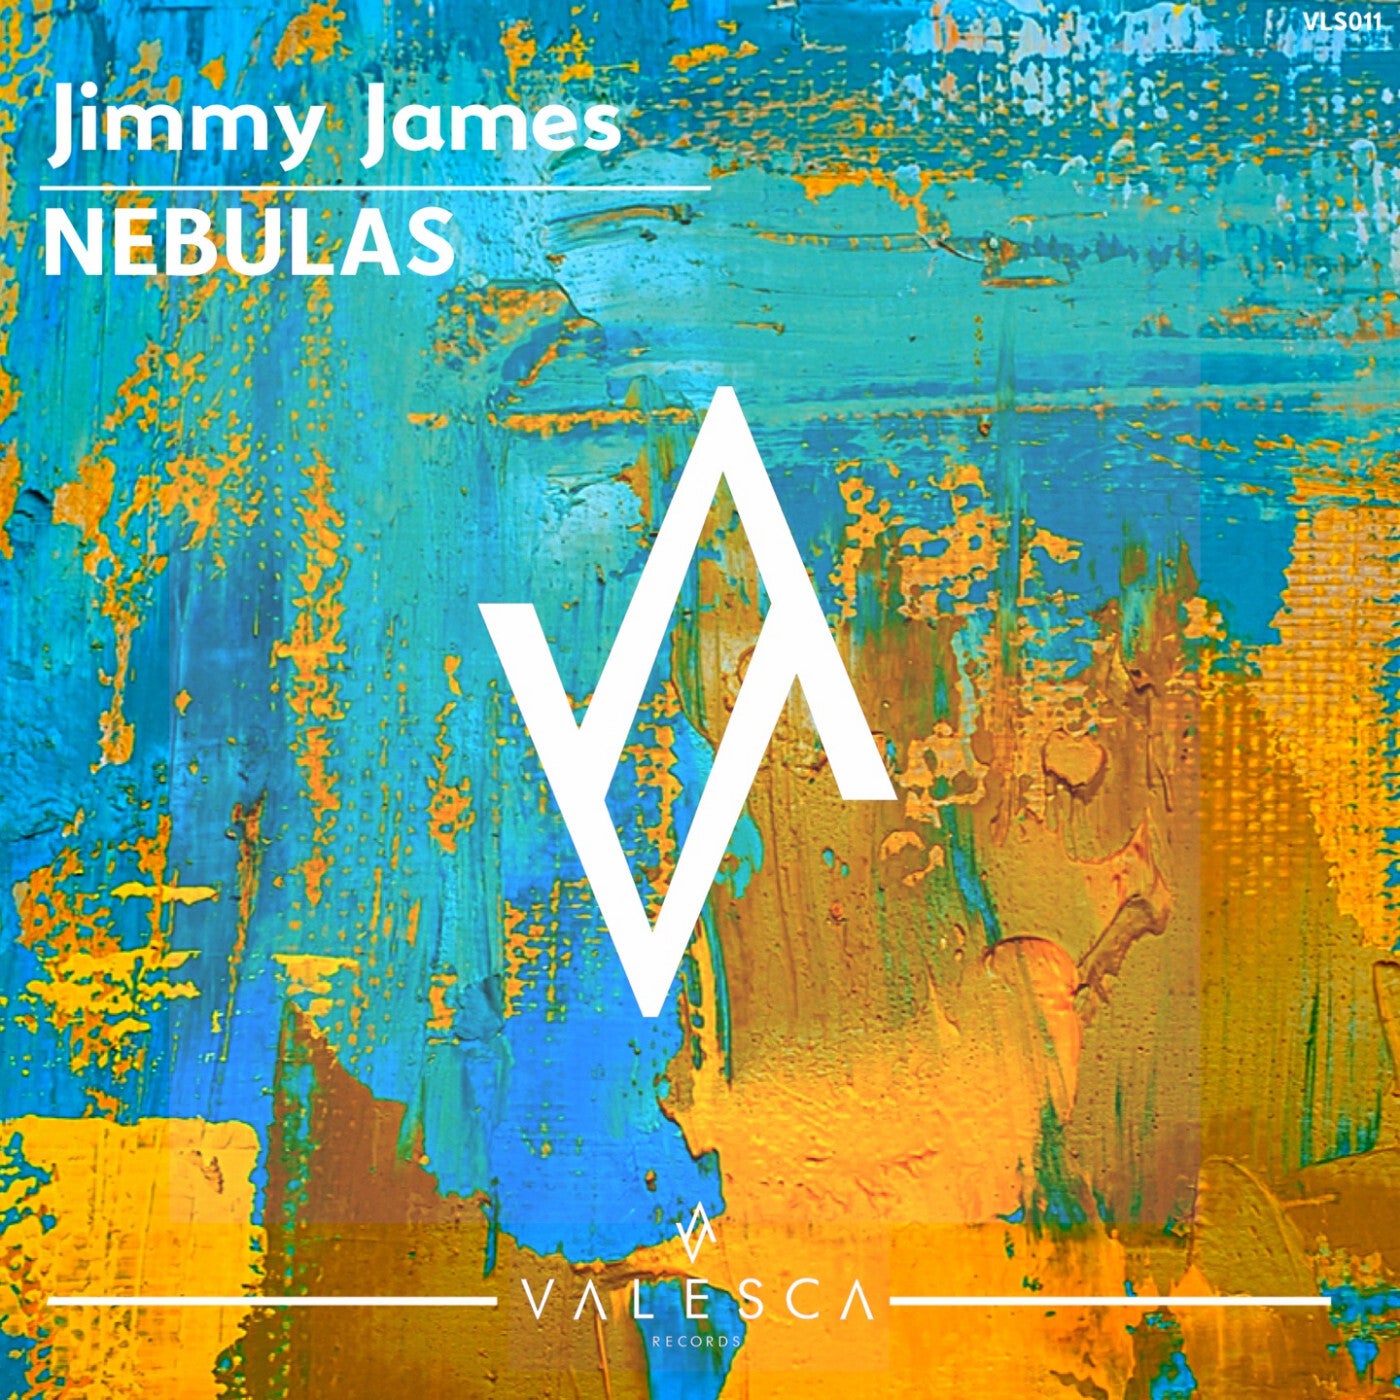 Jimmy James – Nebulas [VLS011]